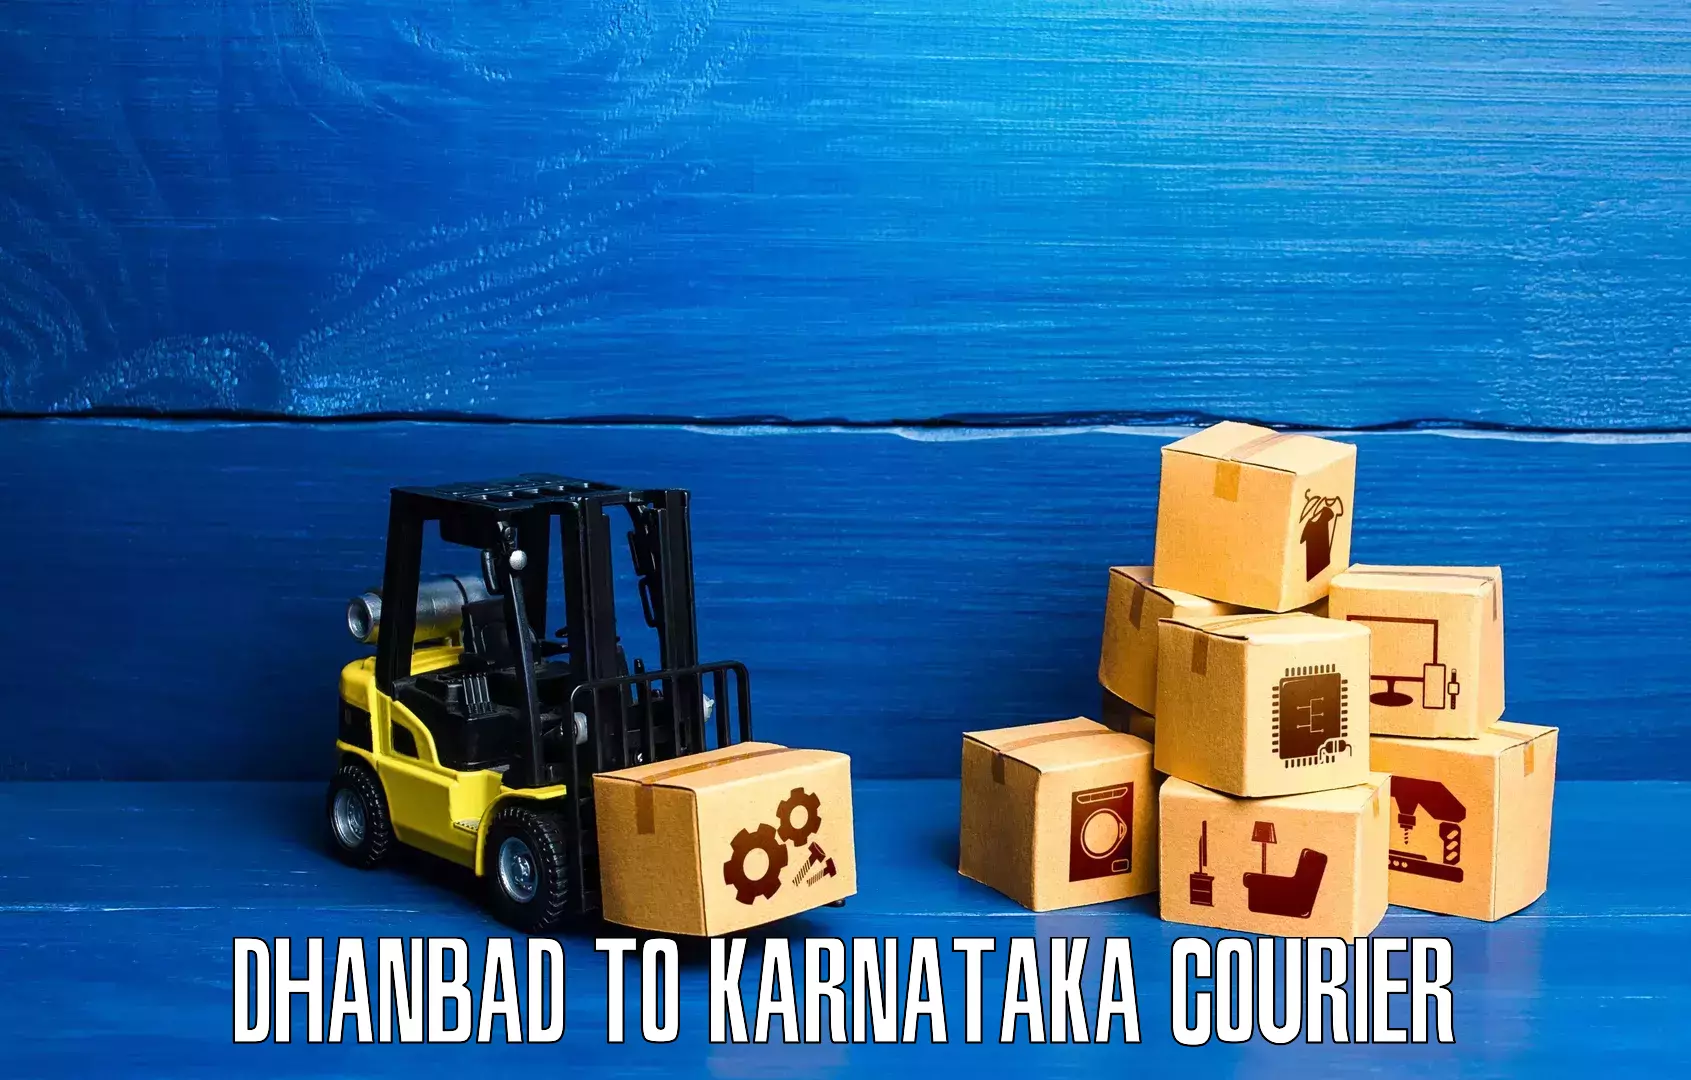 Shipping and handling Dhanbad to Kanjarakatte